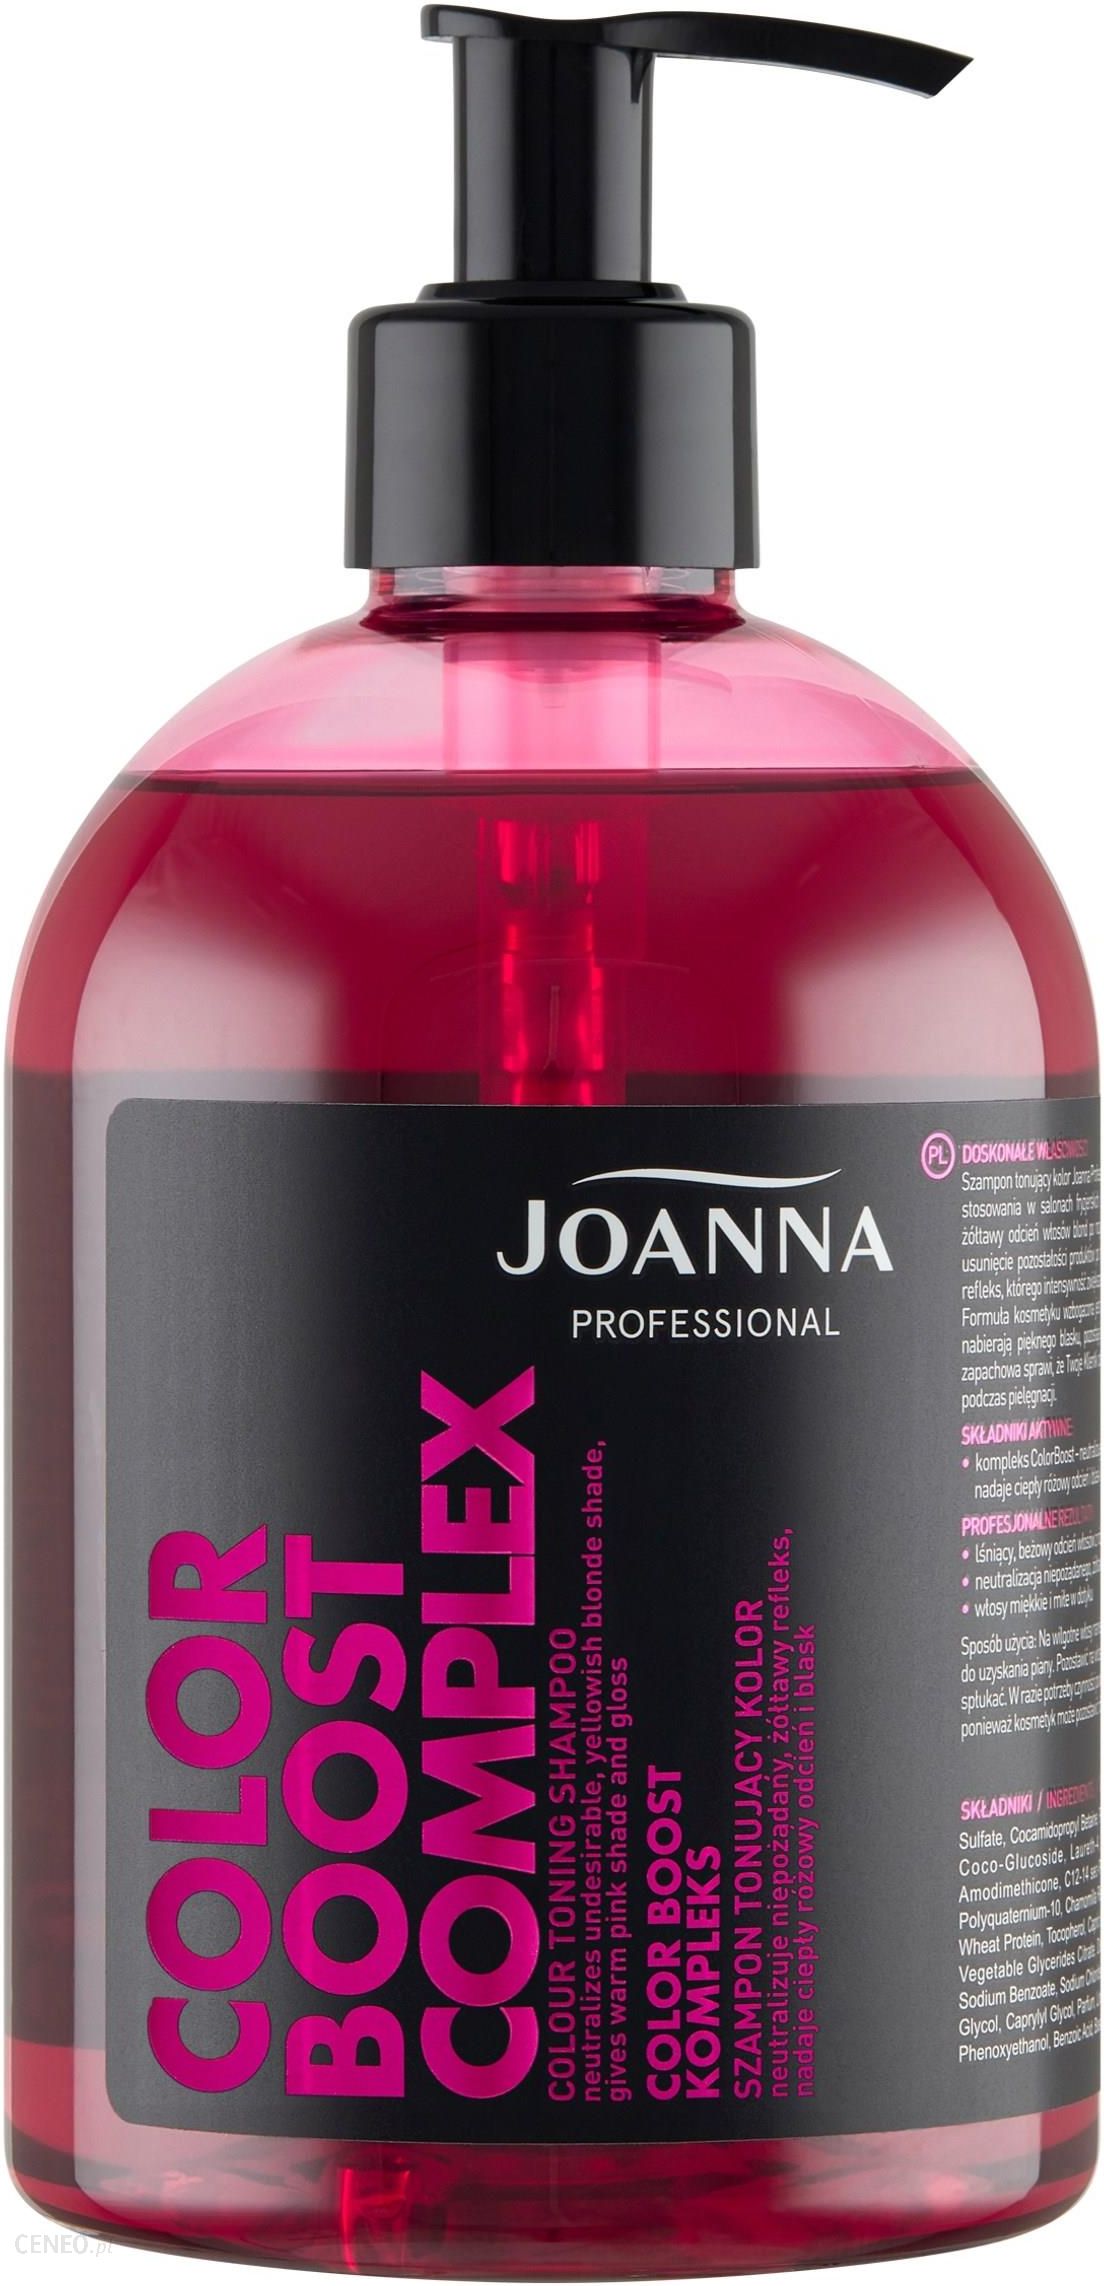 joanna szampon stabilizyjujacy opinie